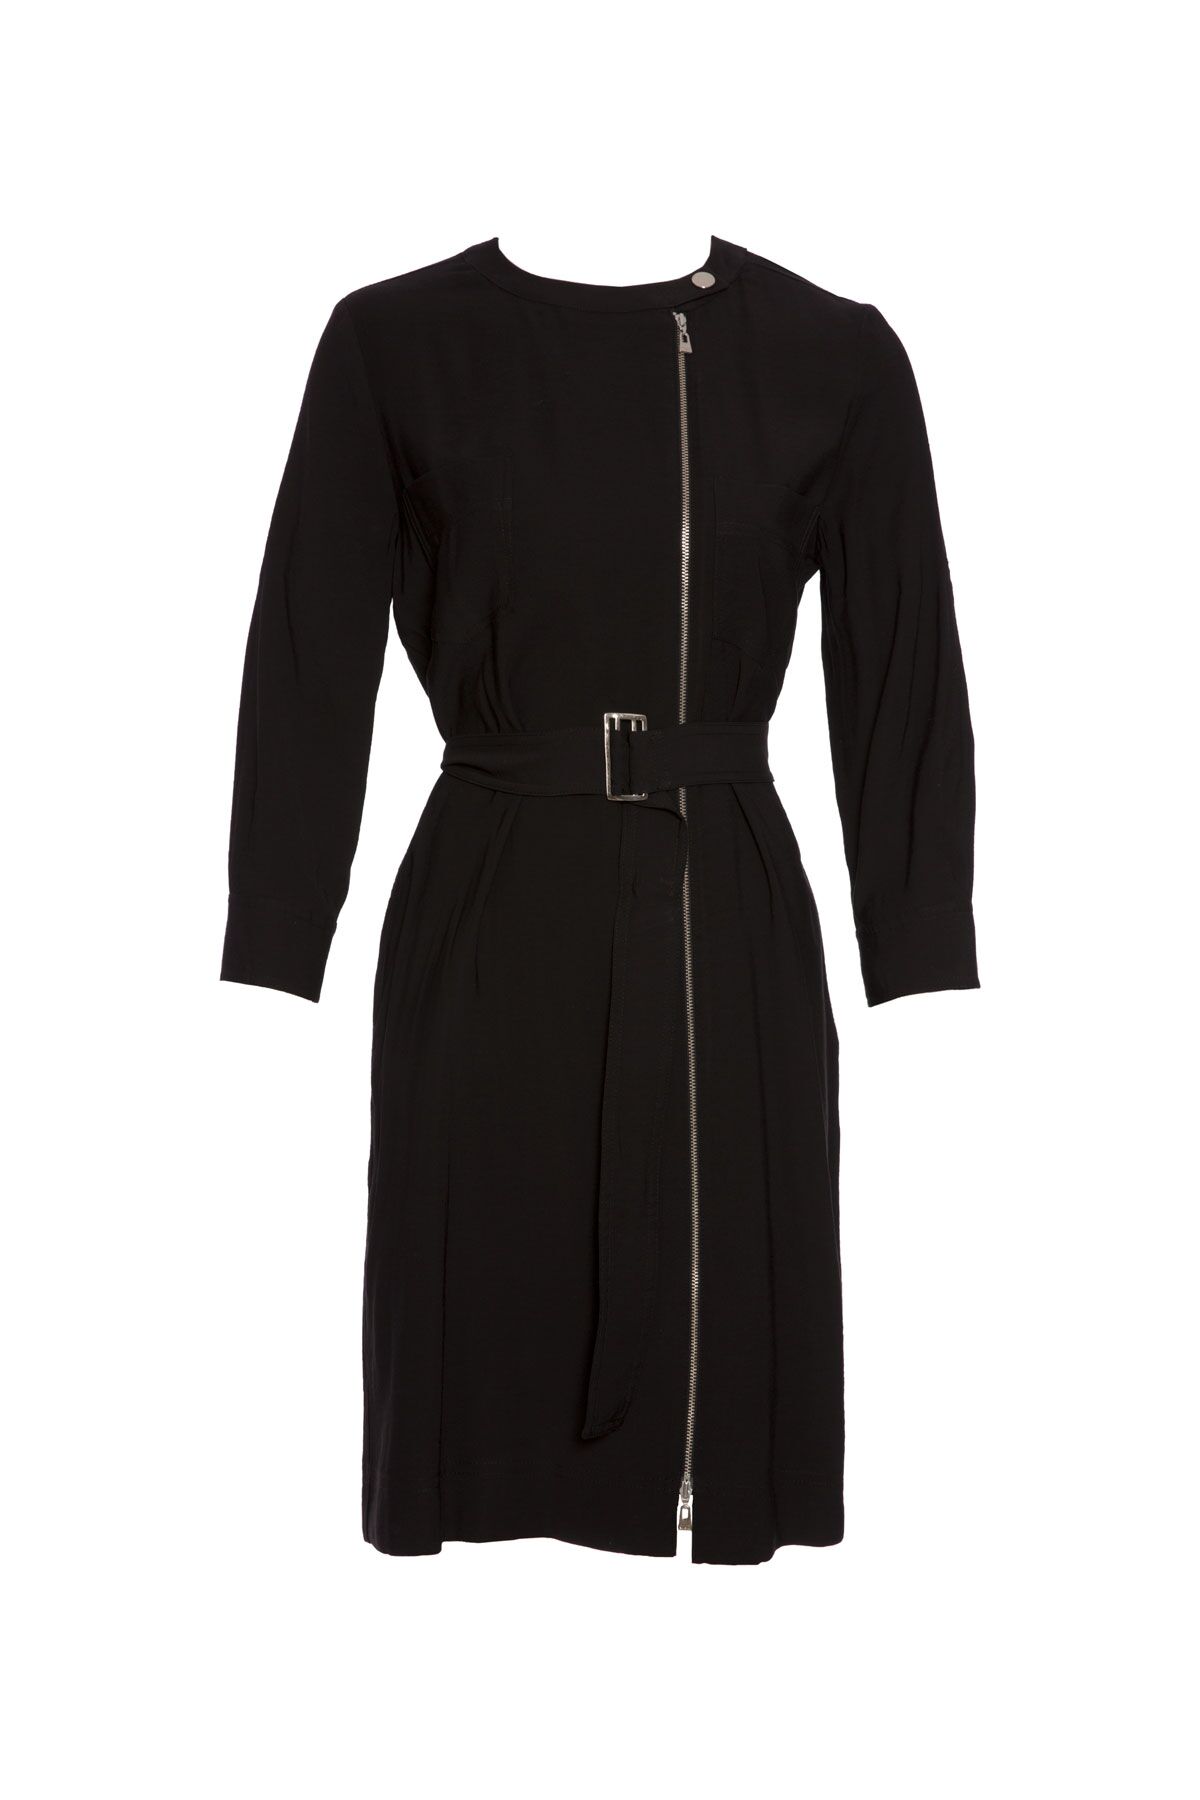 KIWE - Zipper Detailed Two Pocket Belted Black Dress